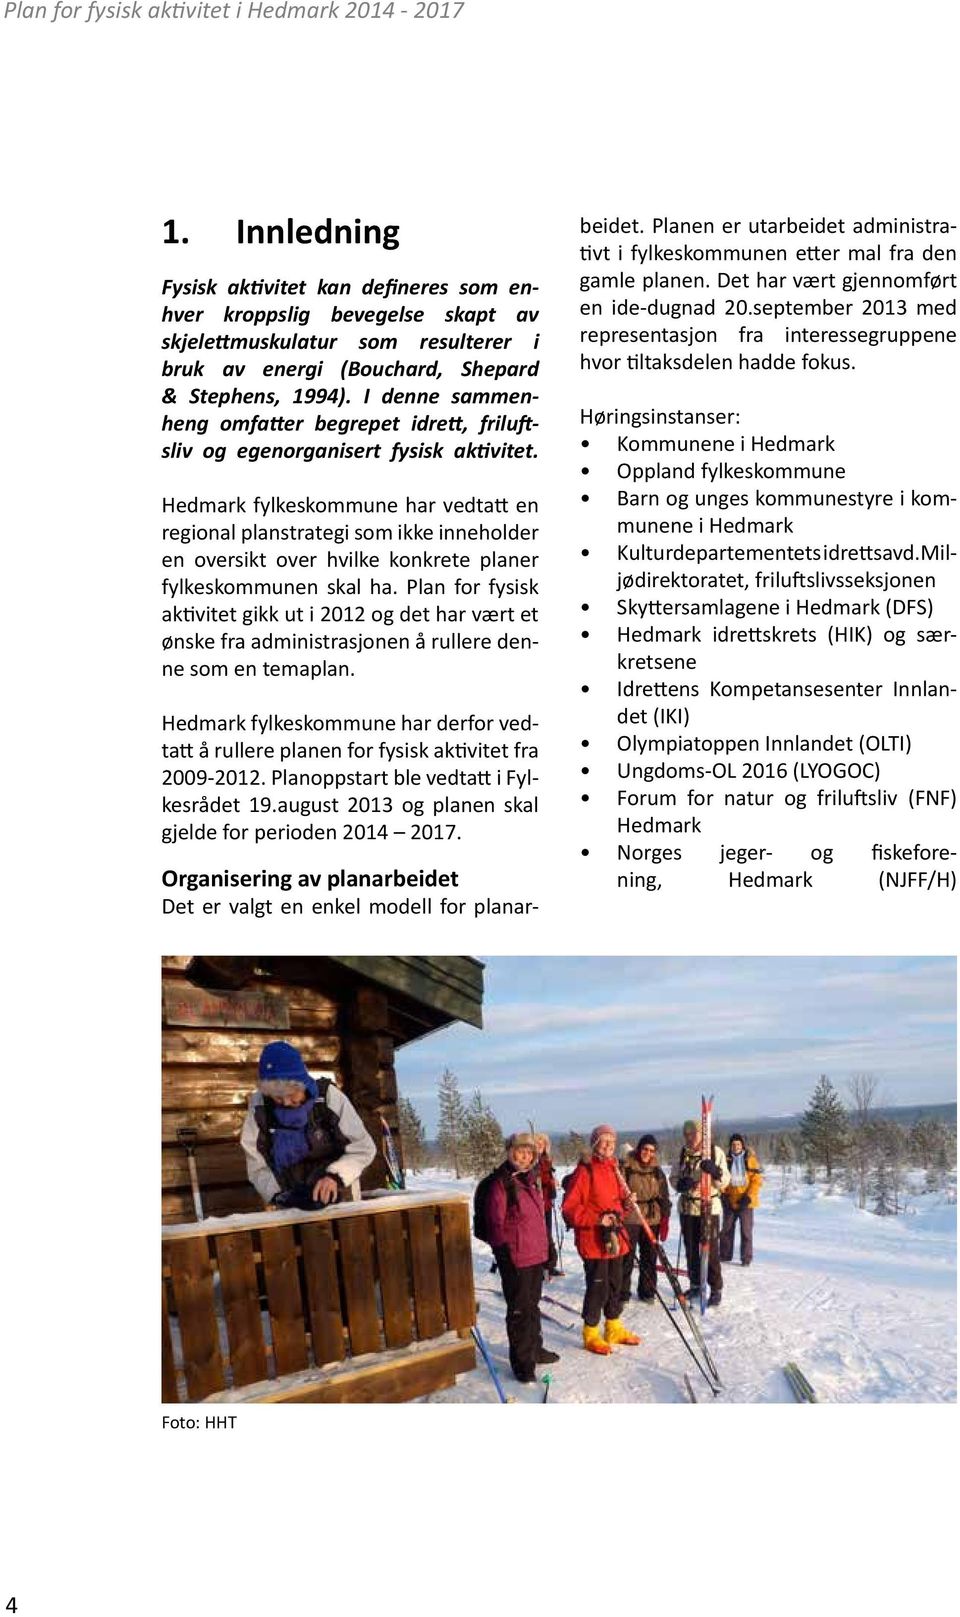 Hedmark fylkeskommune har vedtatt en regional planstrategi som ikke inneholder en oversikt over hvilke konkrete planer fylkeskommunen skal ha.